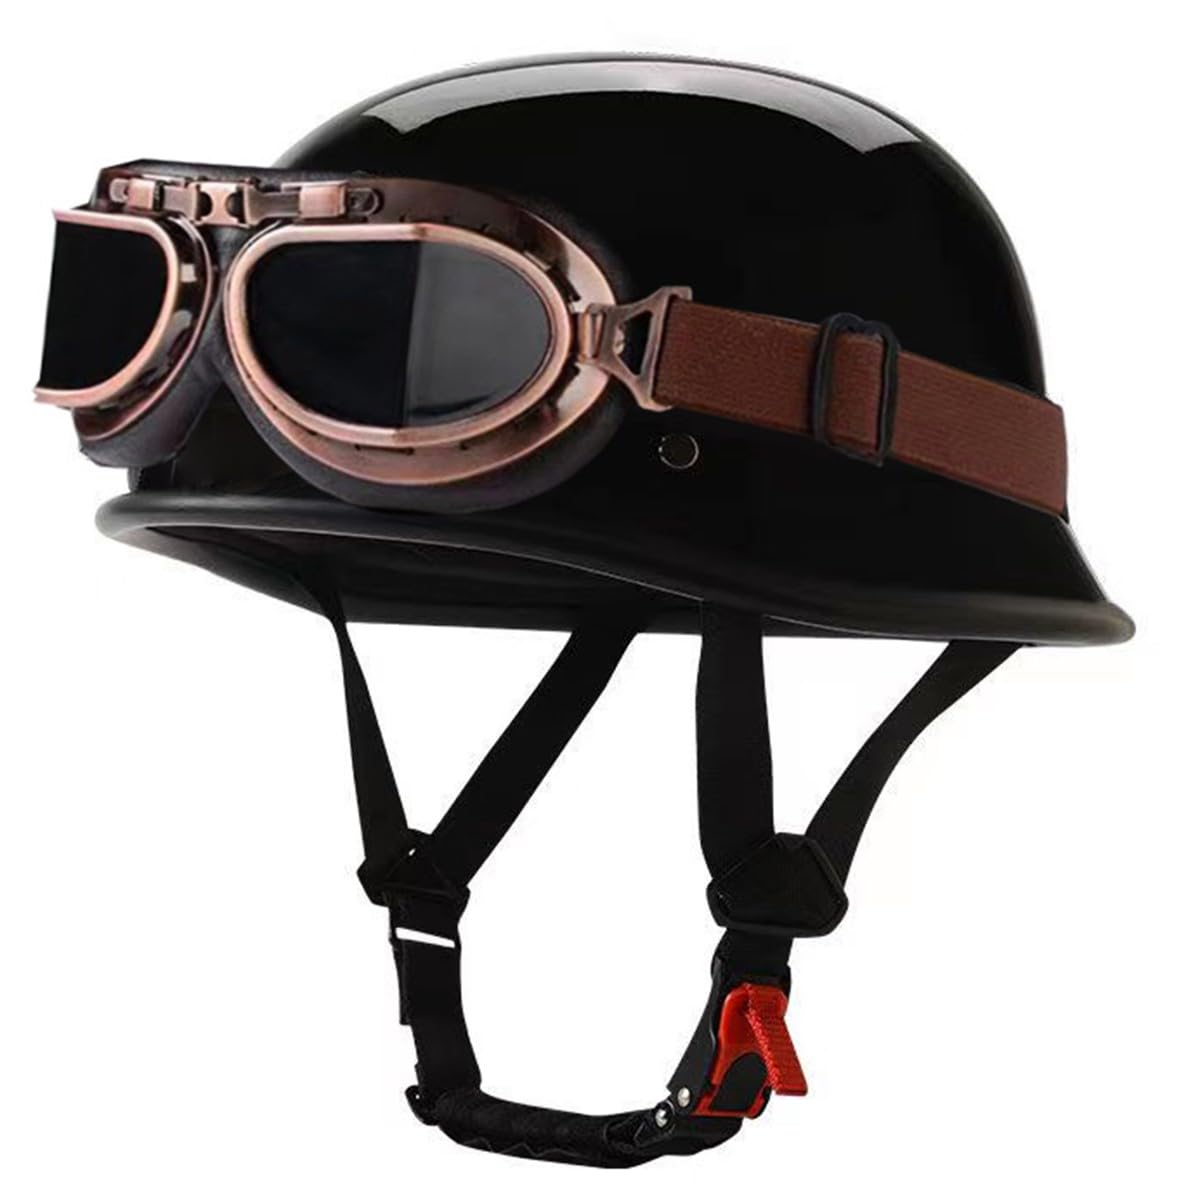 Deutsche Motorrad Halbhelme mit ECE Zertifiziert-Helm, Vintage Jethelm, Öffnen Motorradhelm, Retro Chopper Helm mit Schutzbrille und Schnellverschlussschnallen für Erwachsene S-XXL von RQTEUYE